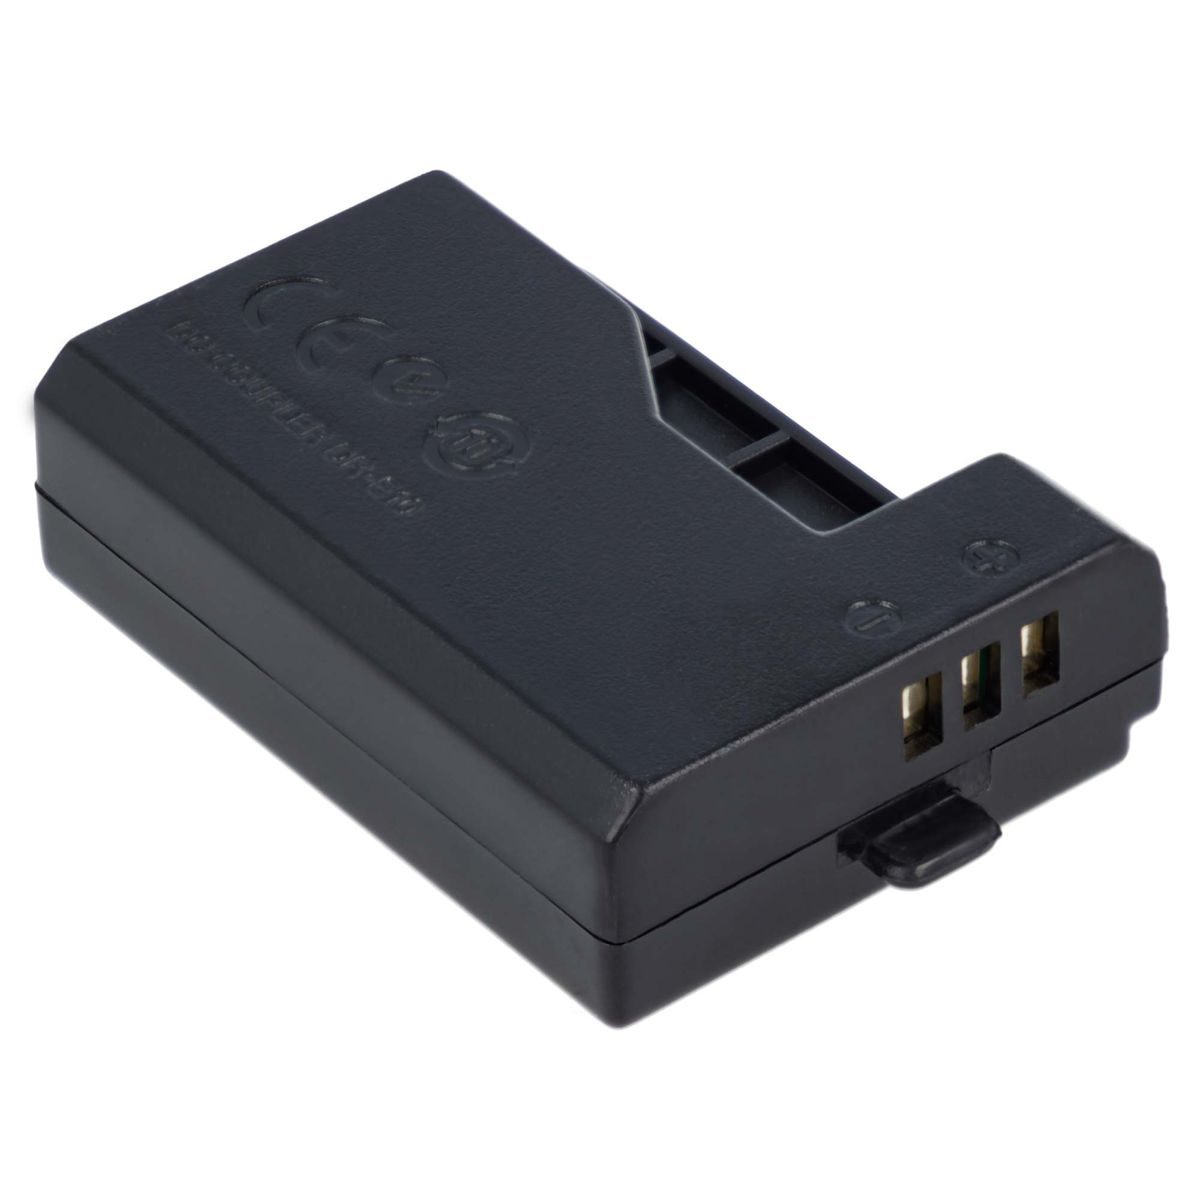 AKKU-KING USB Adapter + Kuppler mit DR-E10 Canon, Ladegerät Angabe keine Canon kompatibel